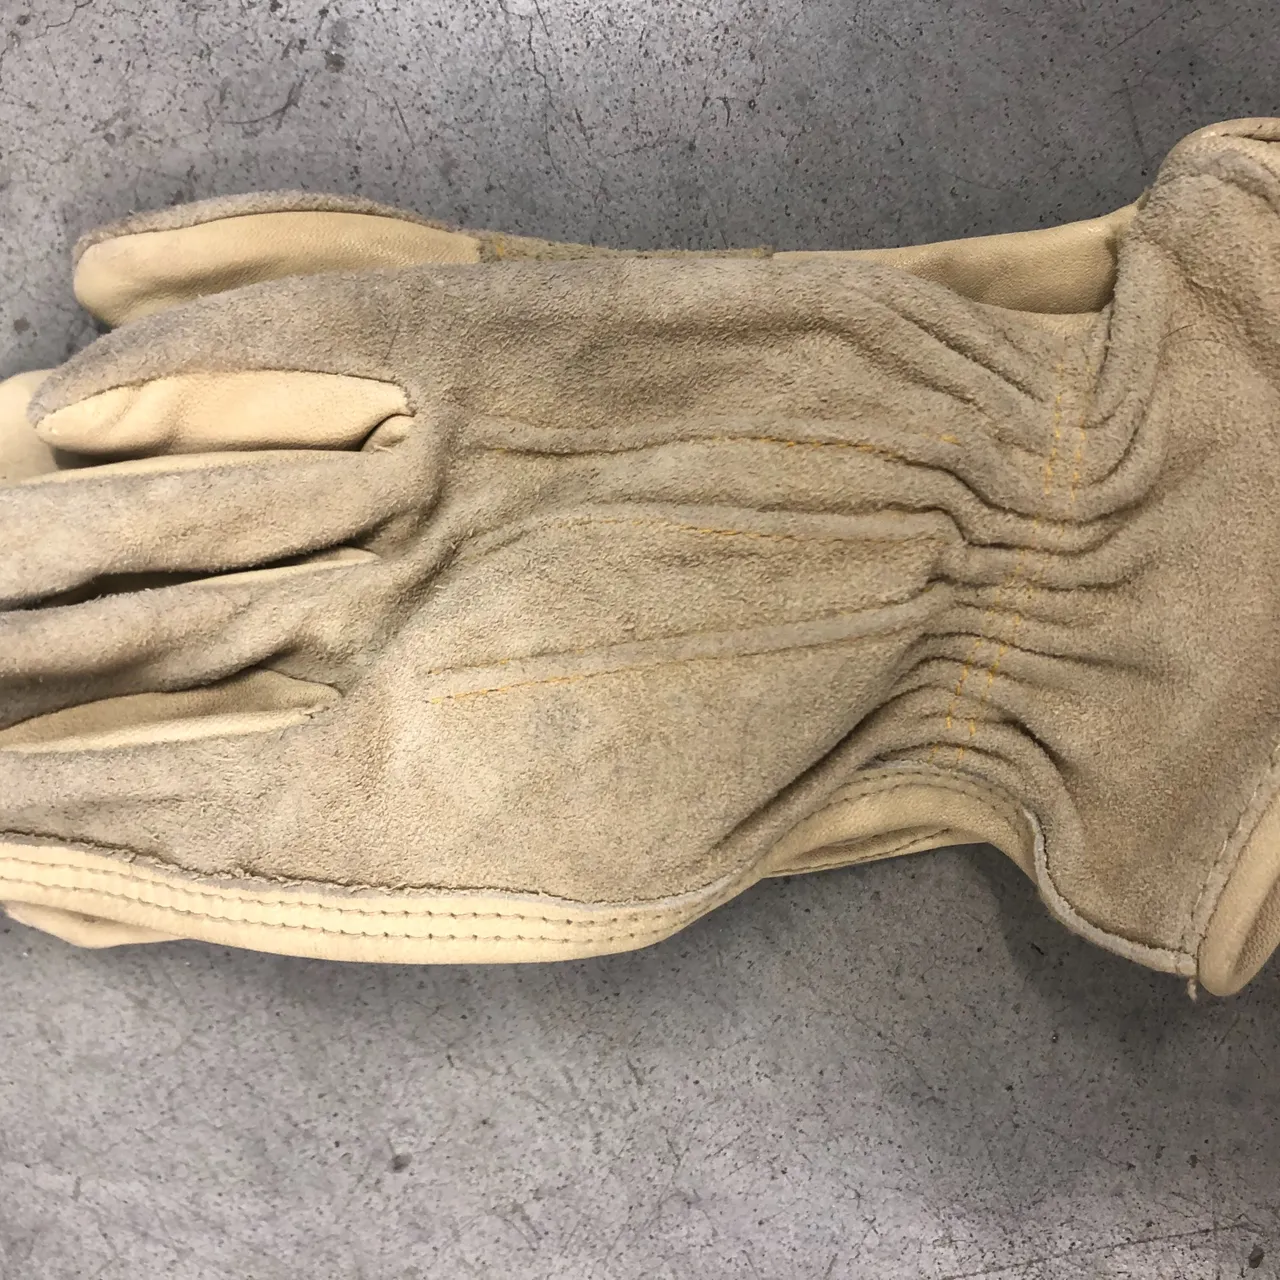 Work gloves photo 3